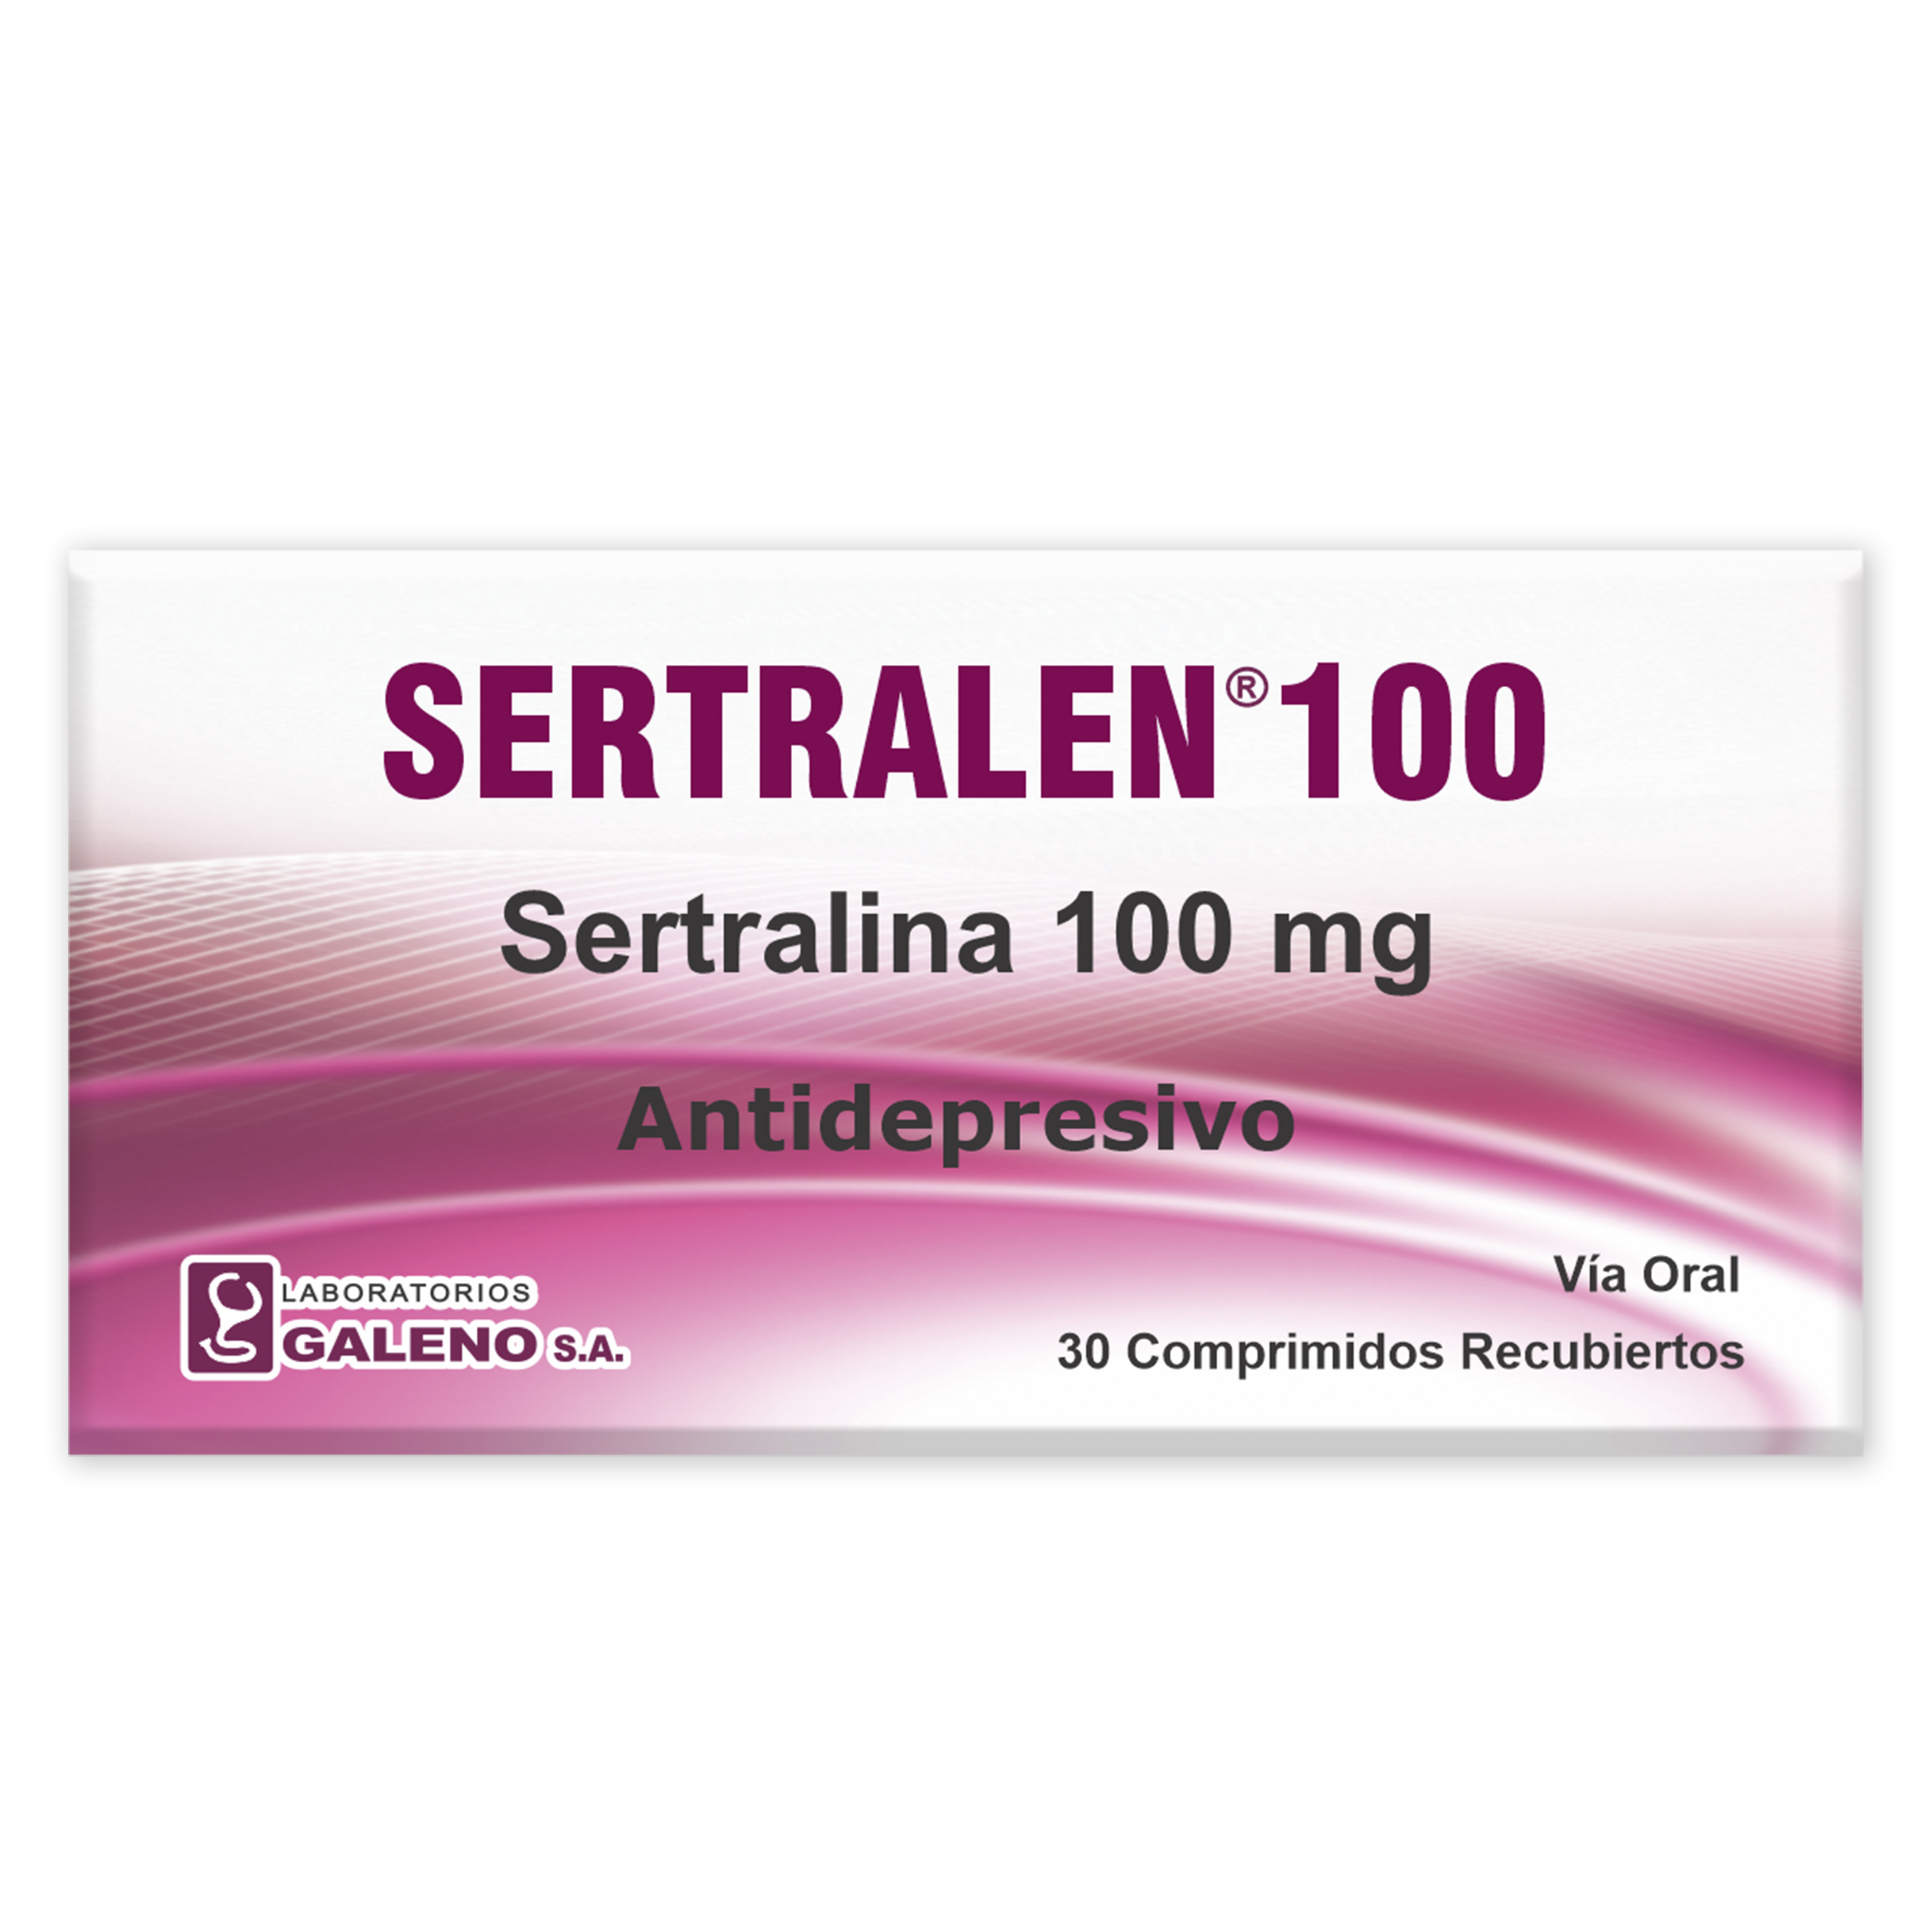 SERTRALEN 100 mg.